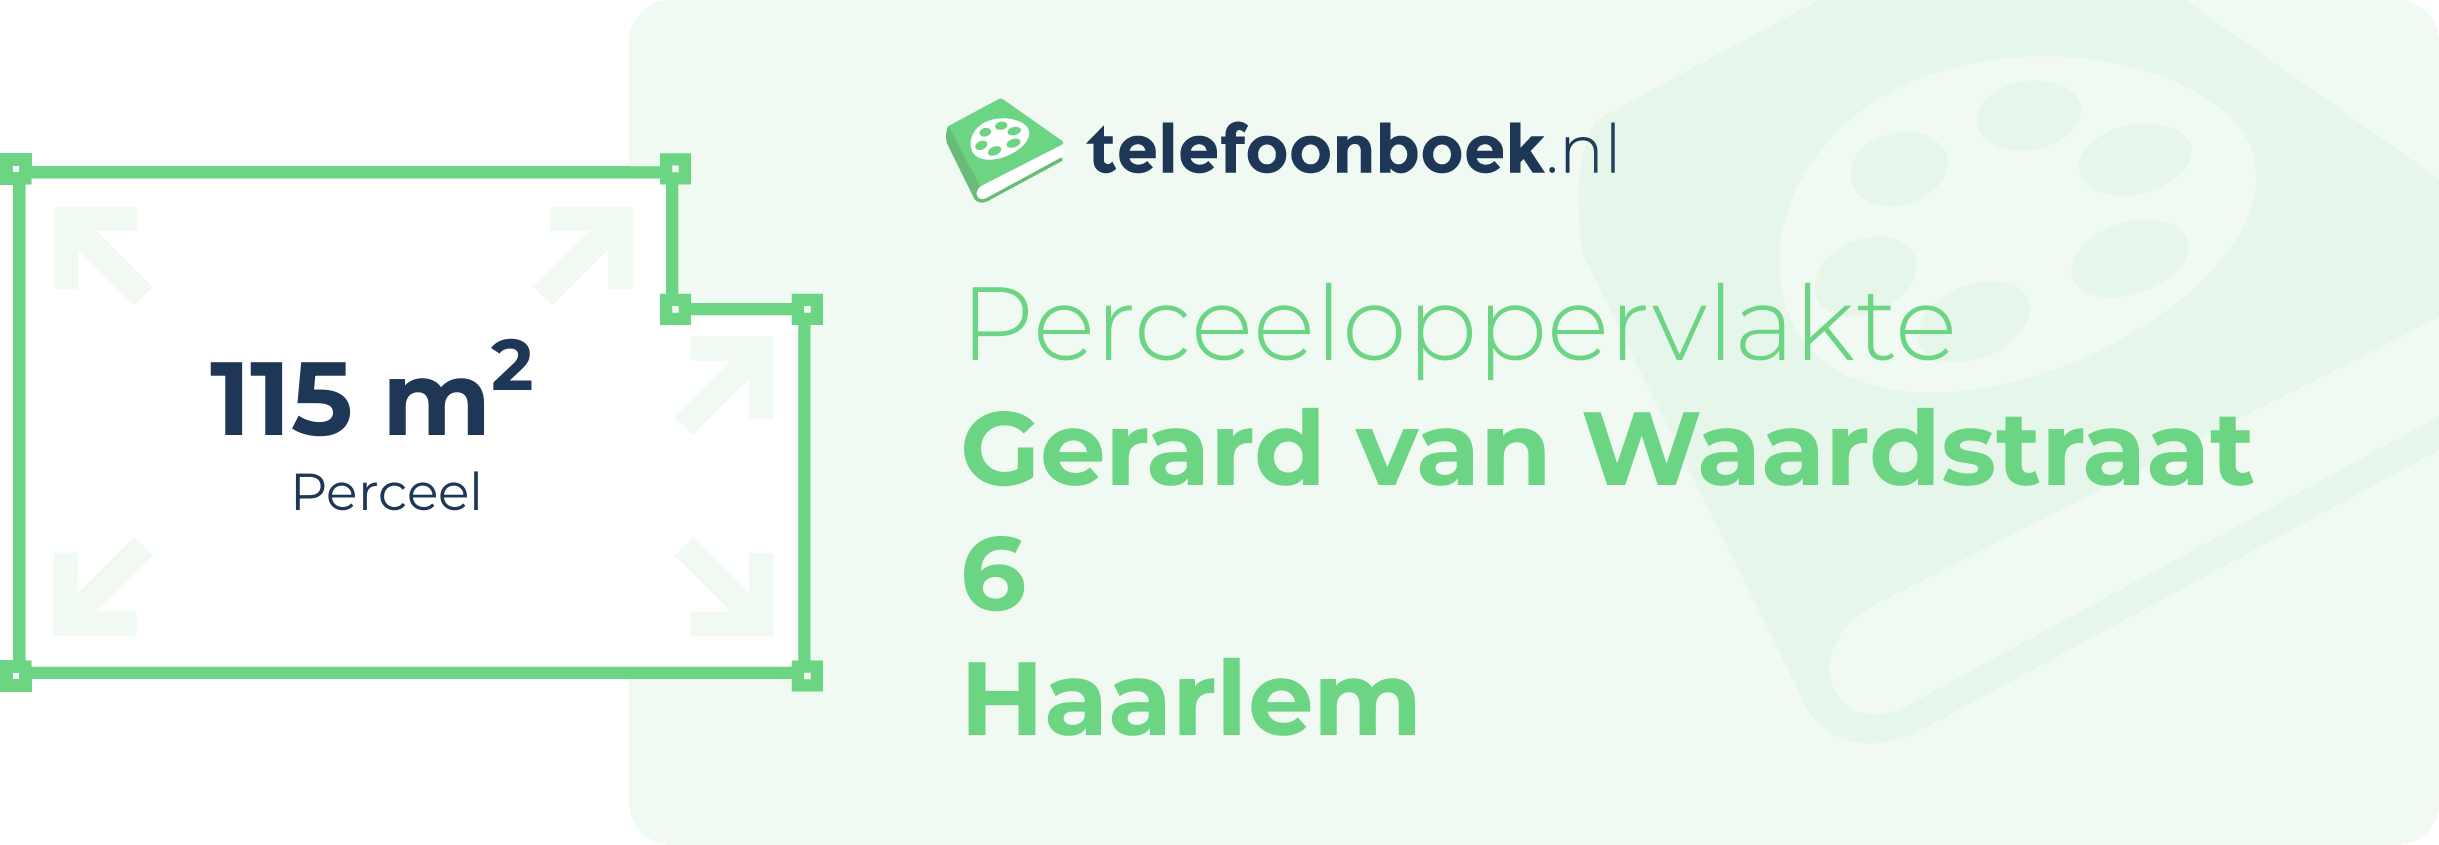 Perceeloppervlakte Gerard Van Waardstraat 6 Haarlem